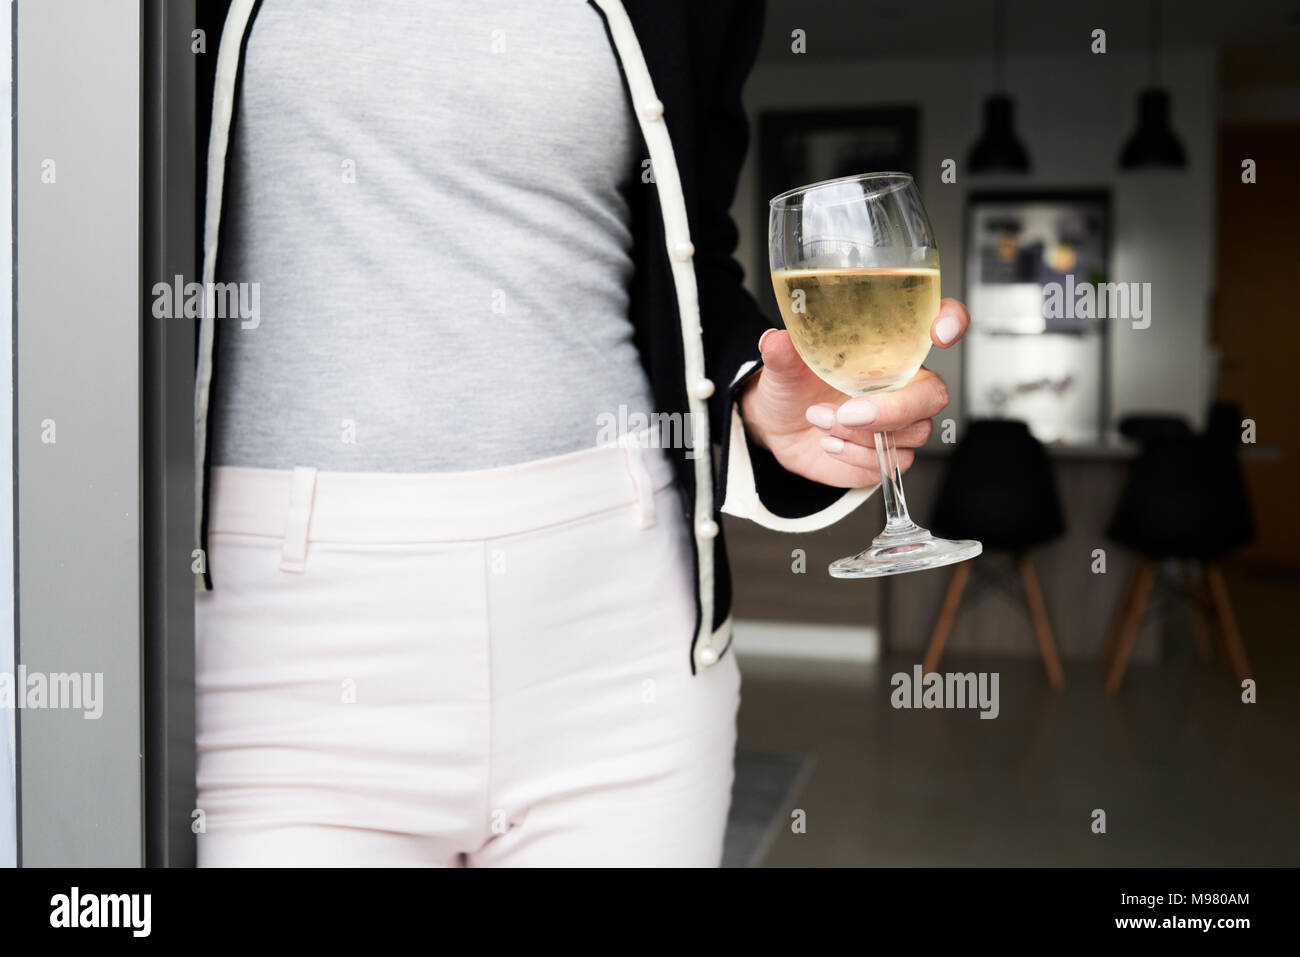 Détail de la femme tenant un verre de vin à la maison. Appartement moderne. Banque D'Images